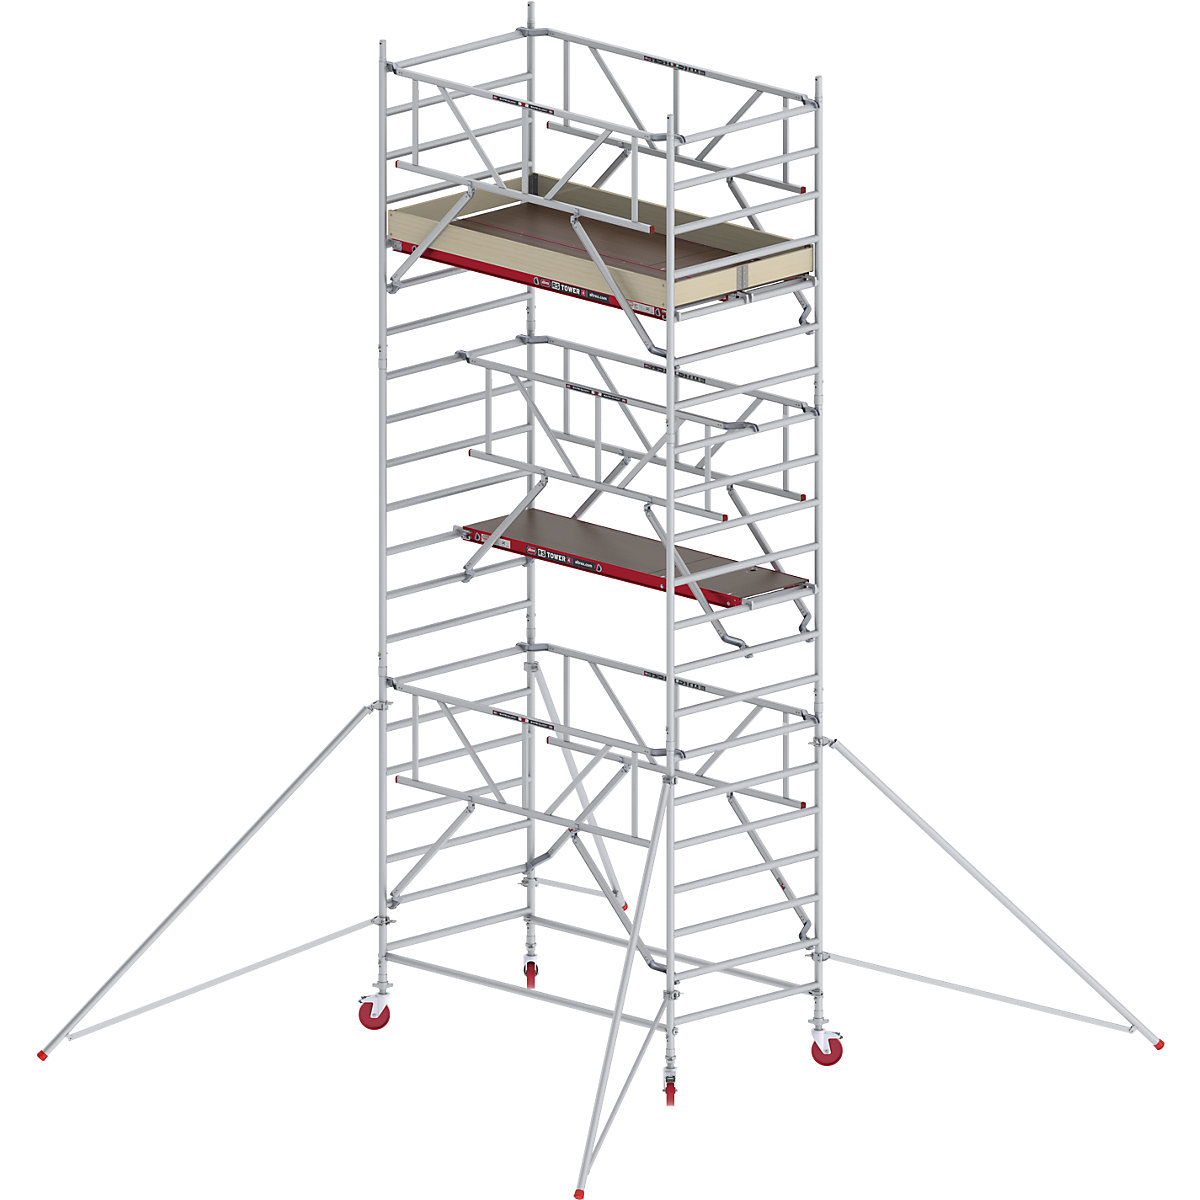 RS TOWER 42 széles mobil állvány Safe-Quick® rendszerrel – Altrex, fadobogó, hossza 1,85 m, munkamagasság 7,20 m-8